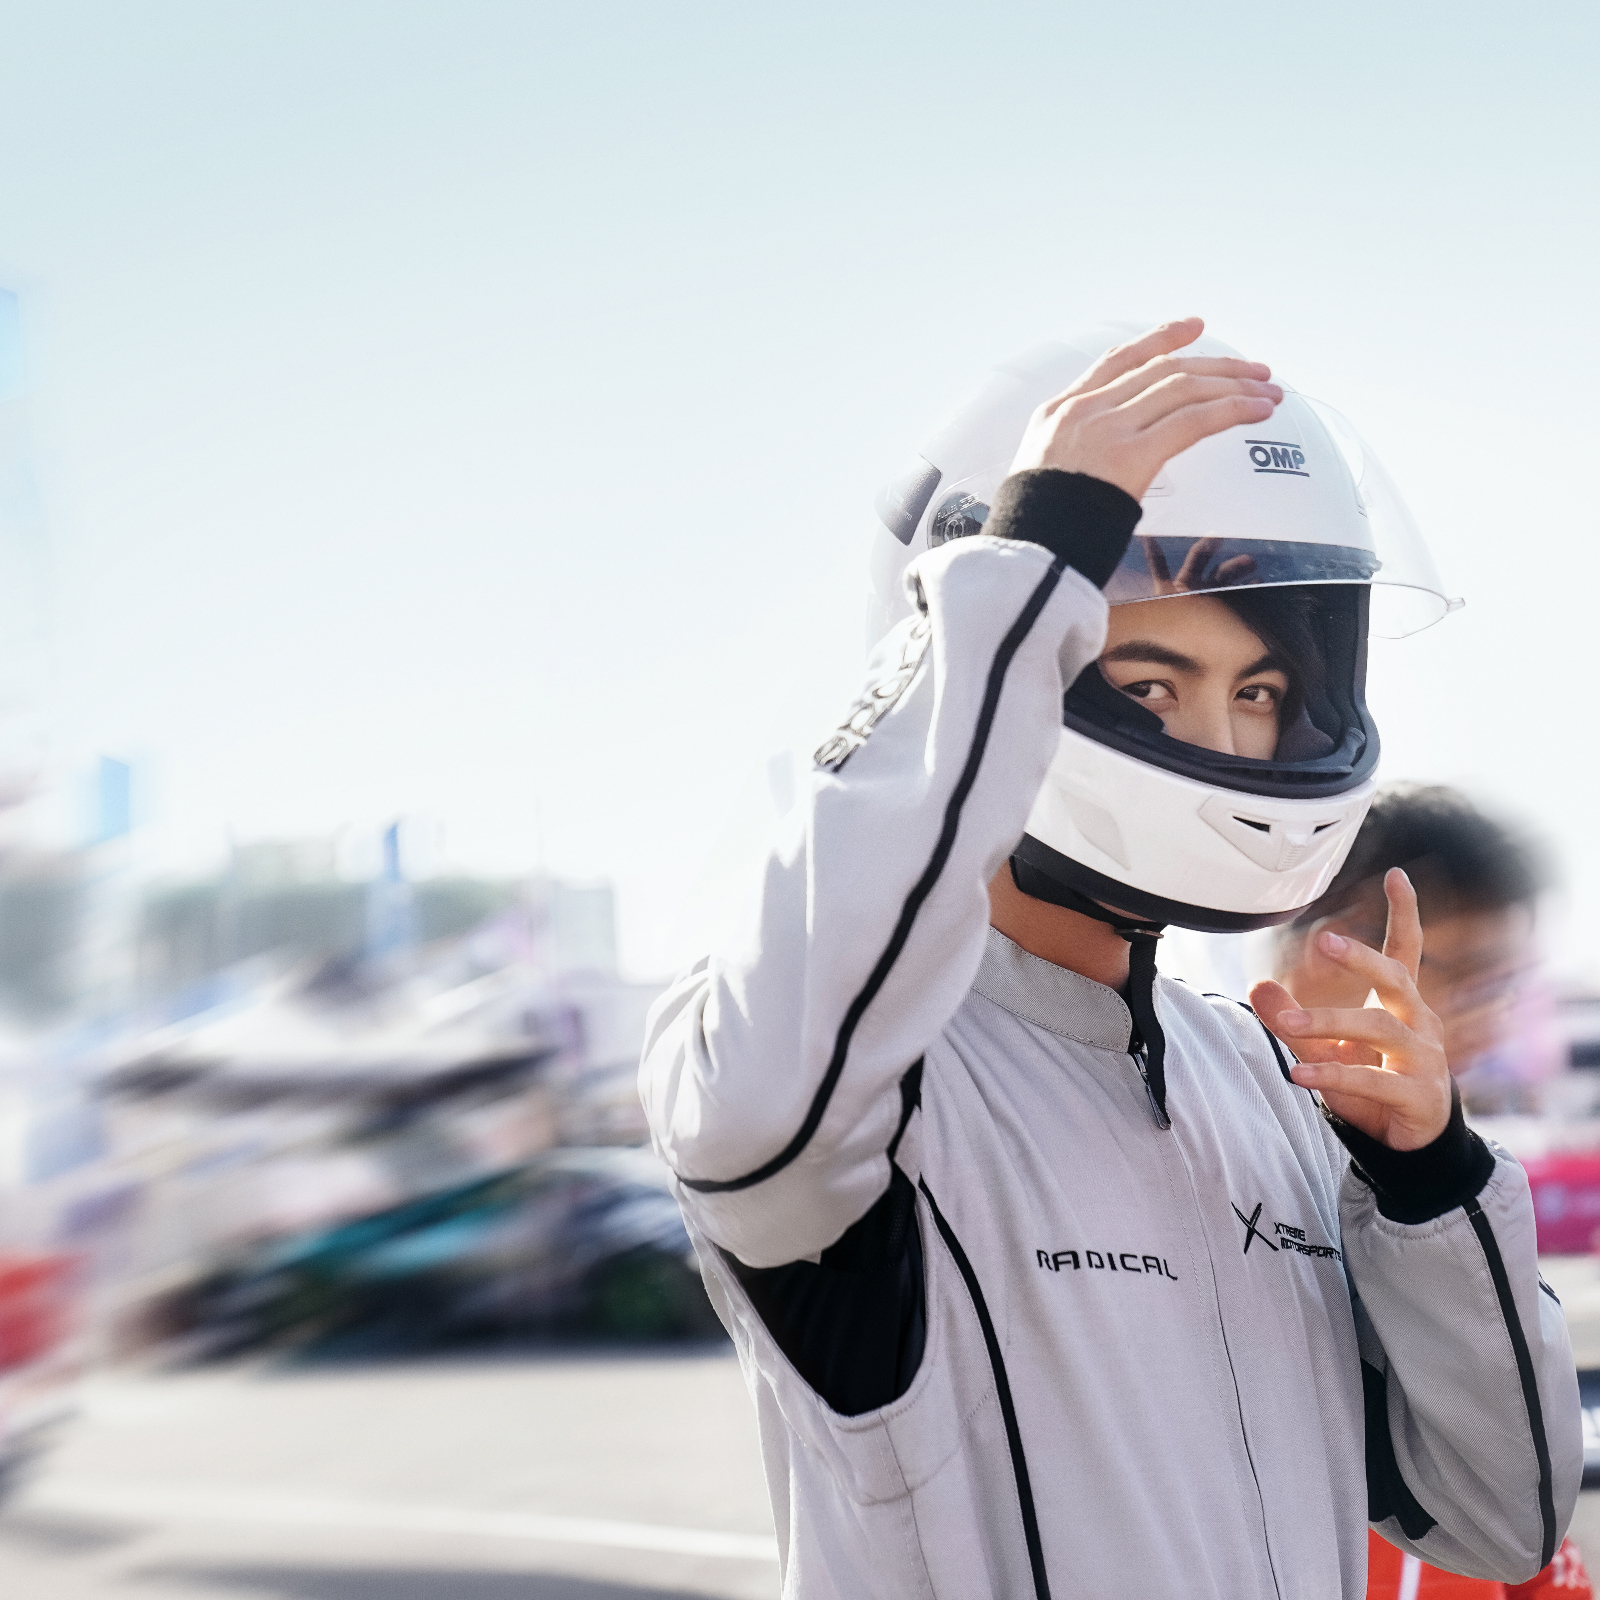 刘帅《演技派》激烈角逐 亚洲赛车电子竞技大师赛体验飞驰人生